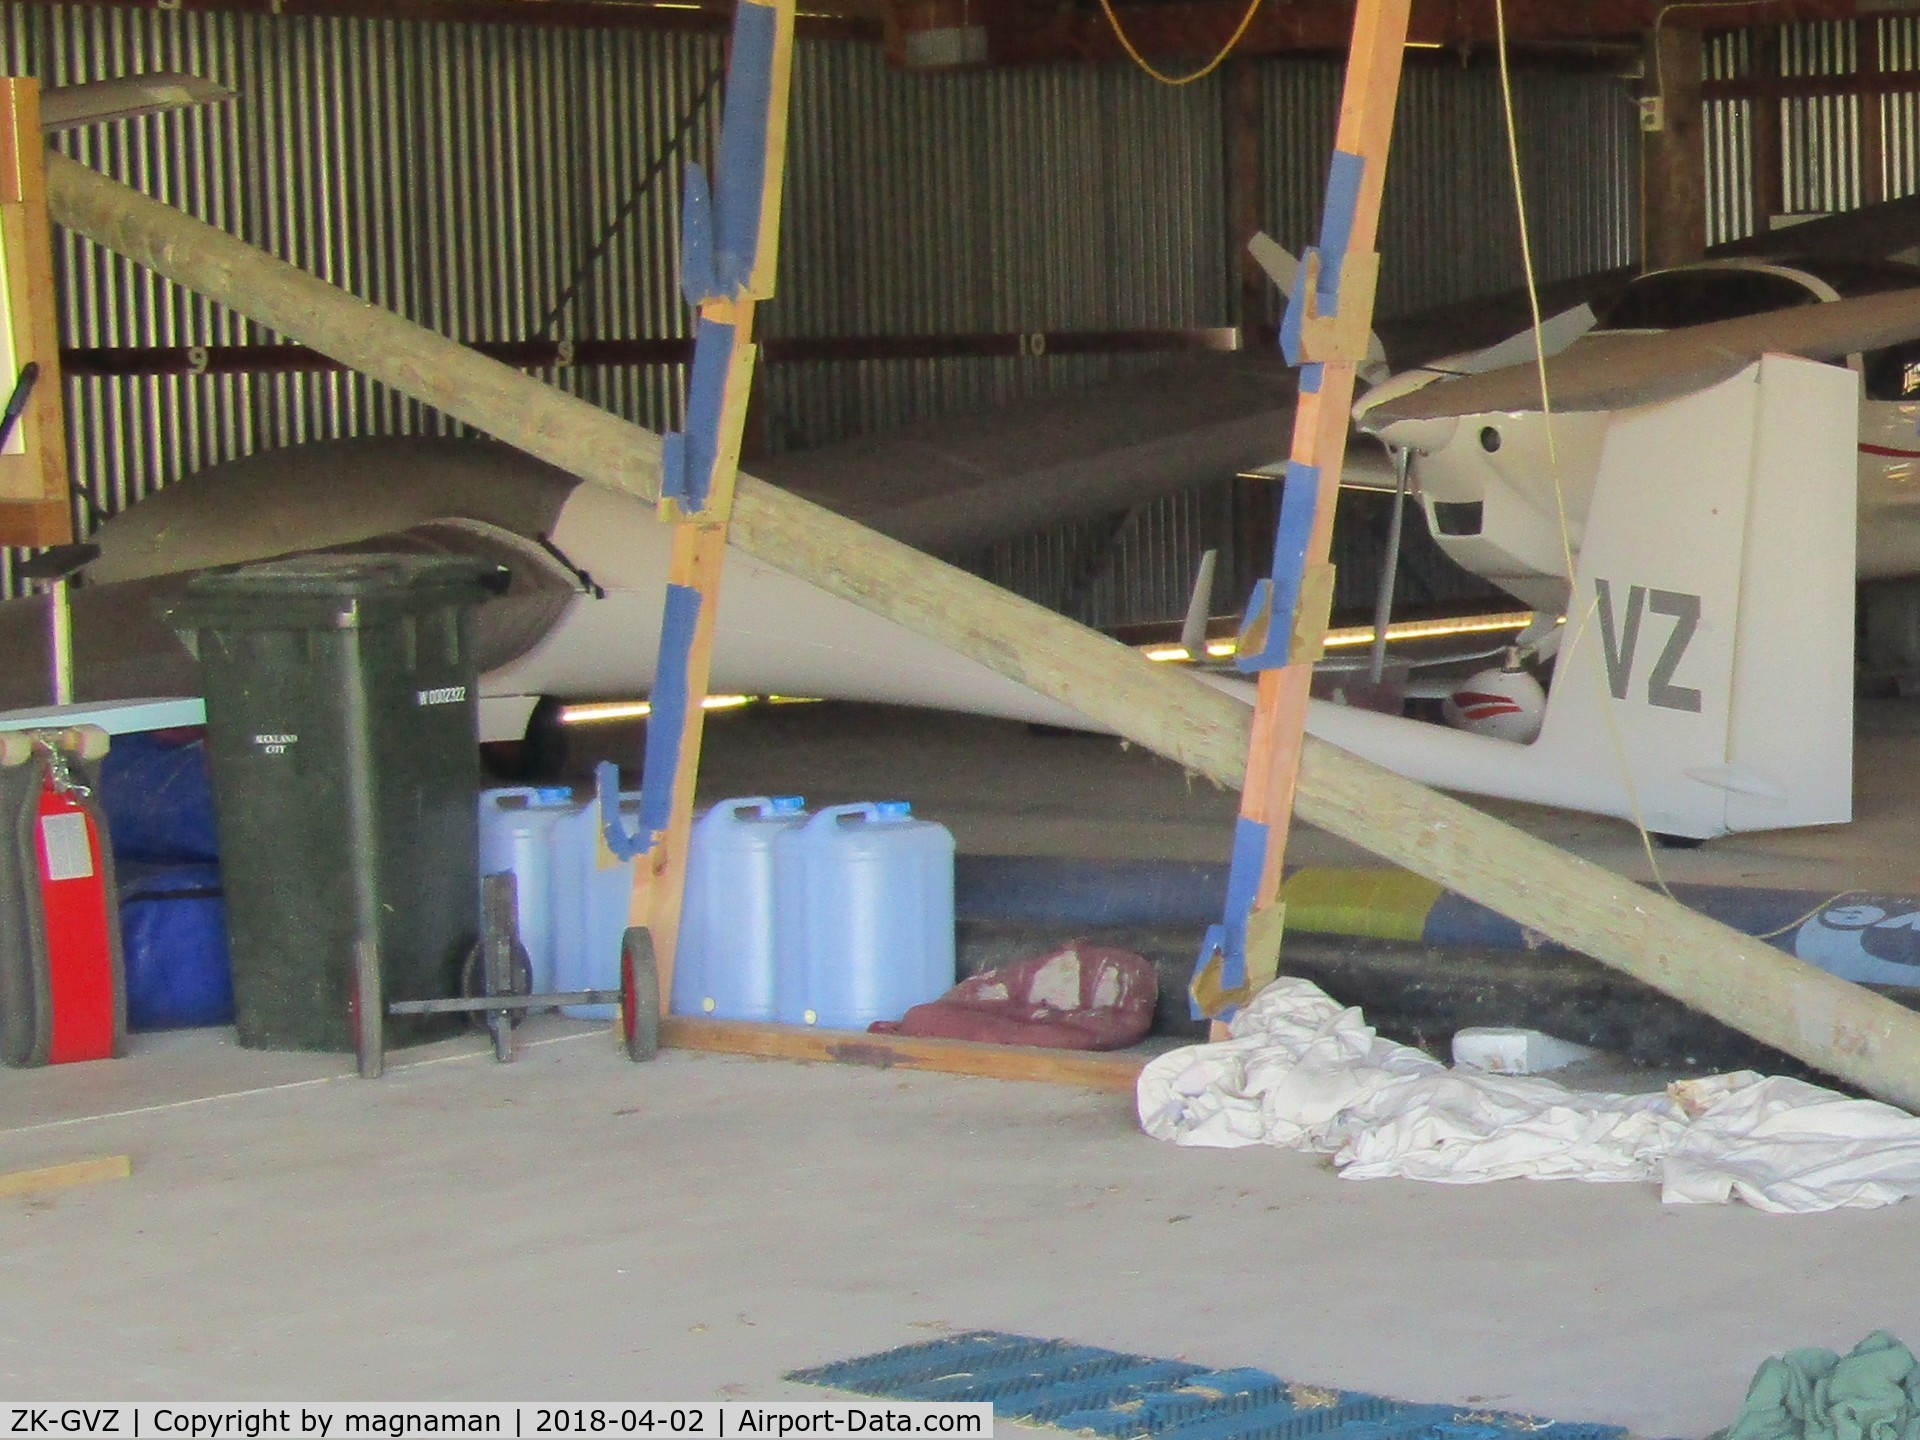 ZK-GVZ, Schempp-Hirth Cirrus C/N 20, in crowded hangar at Drury